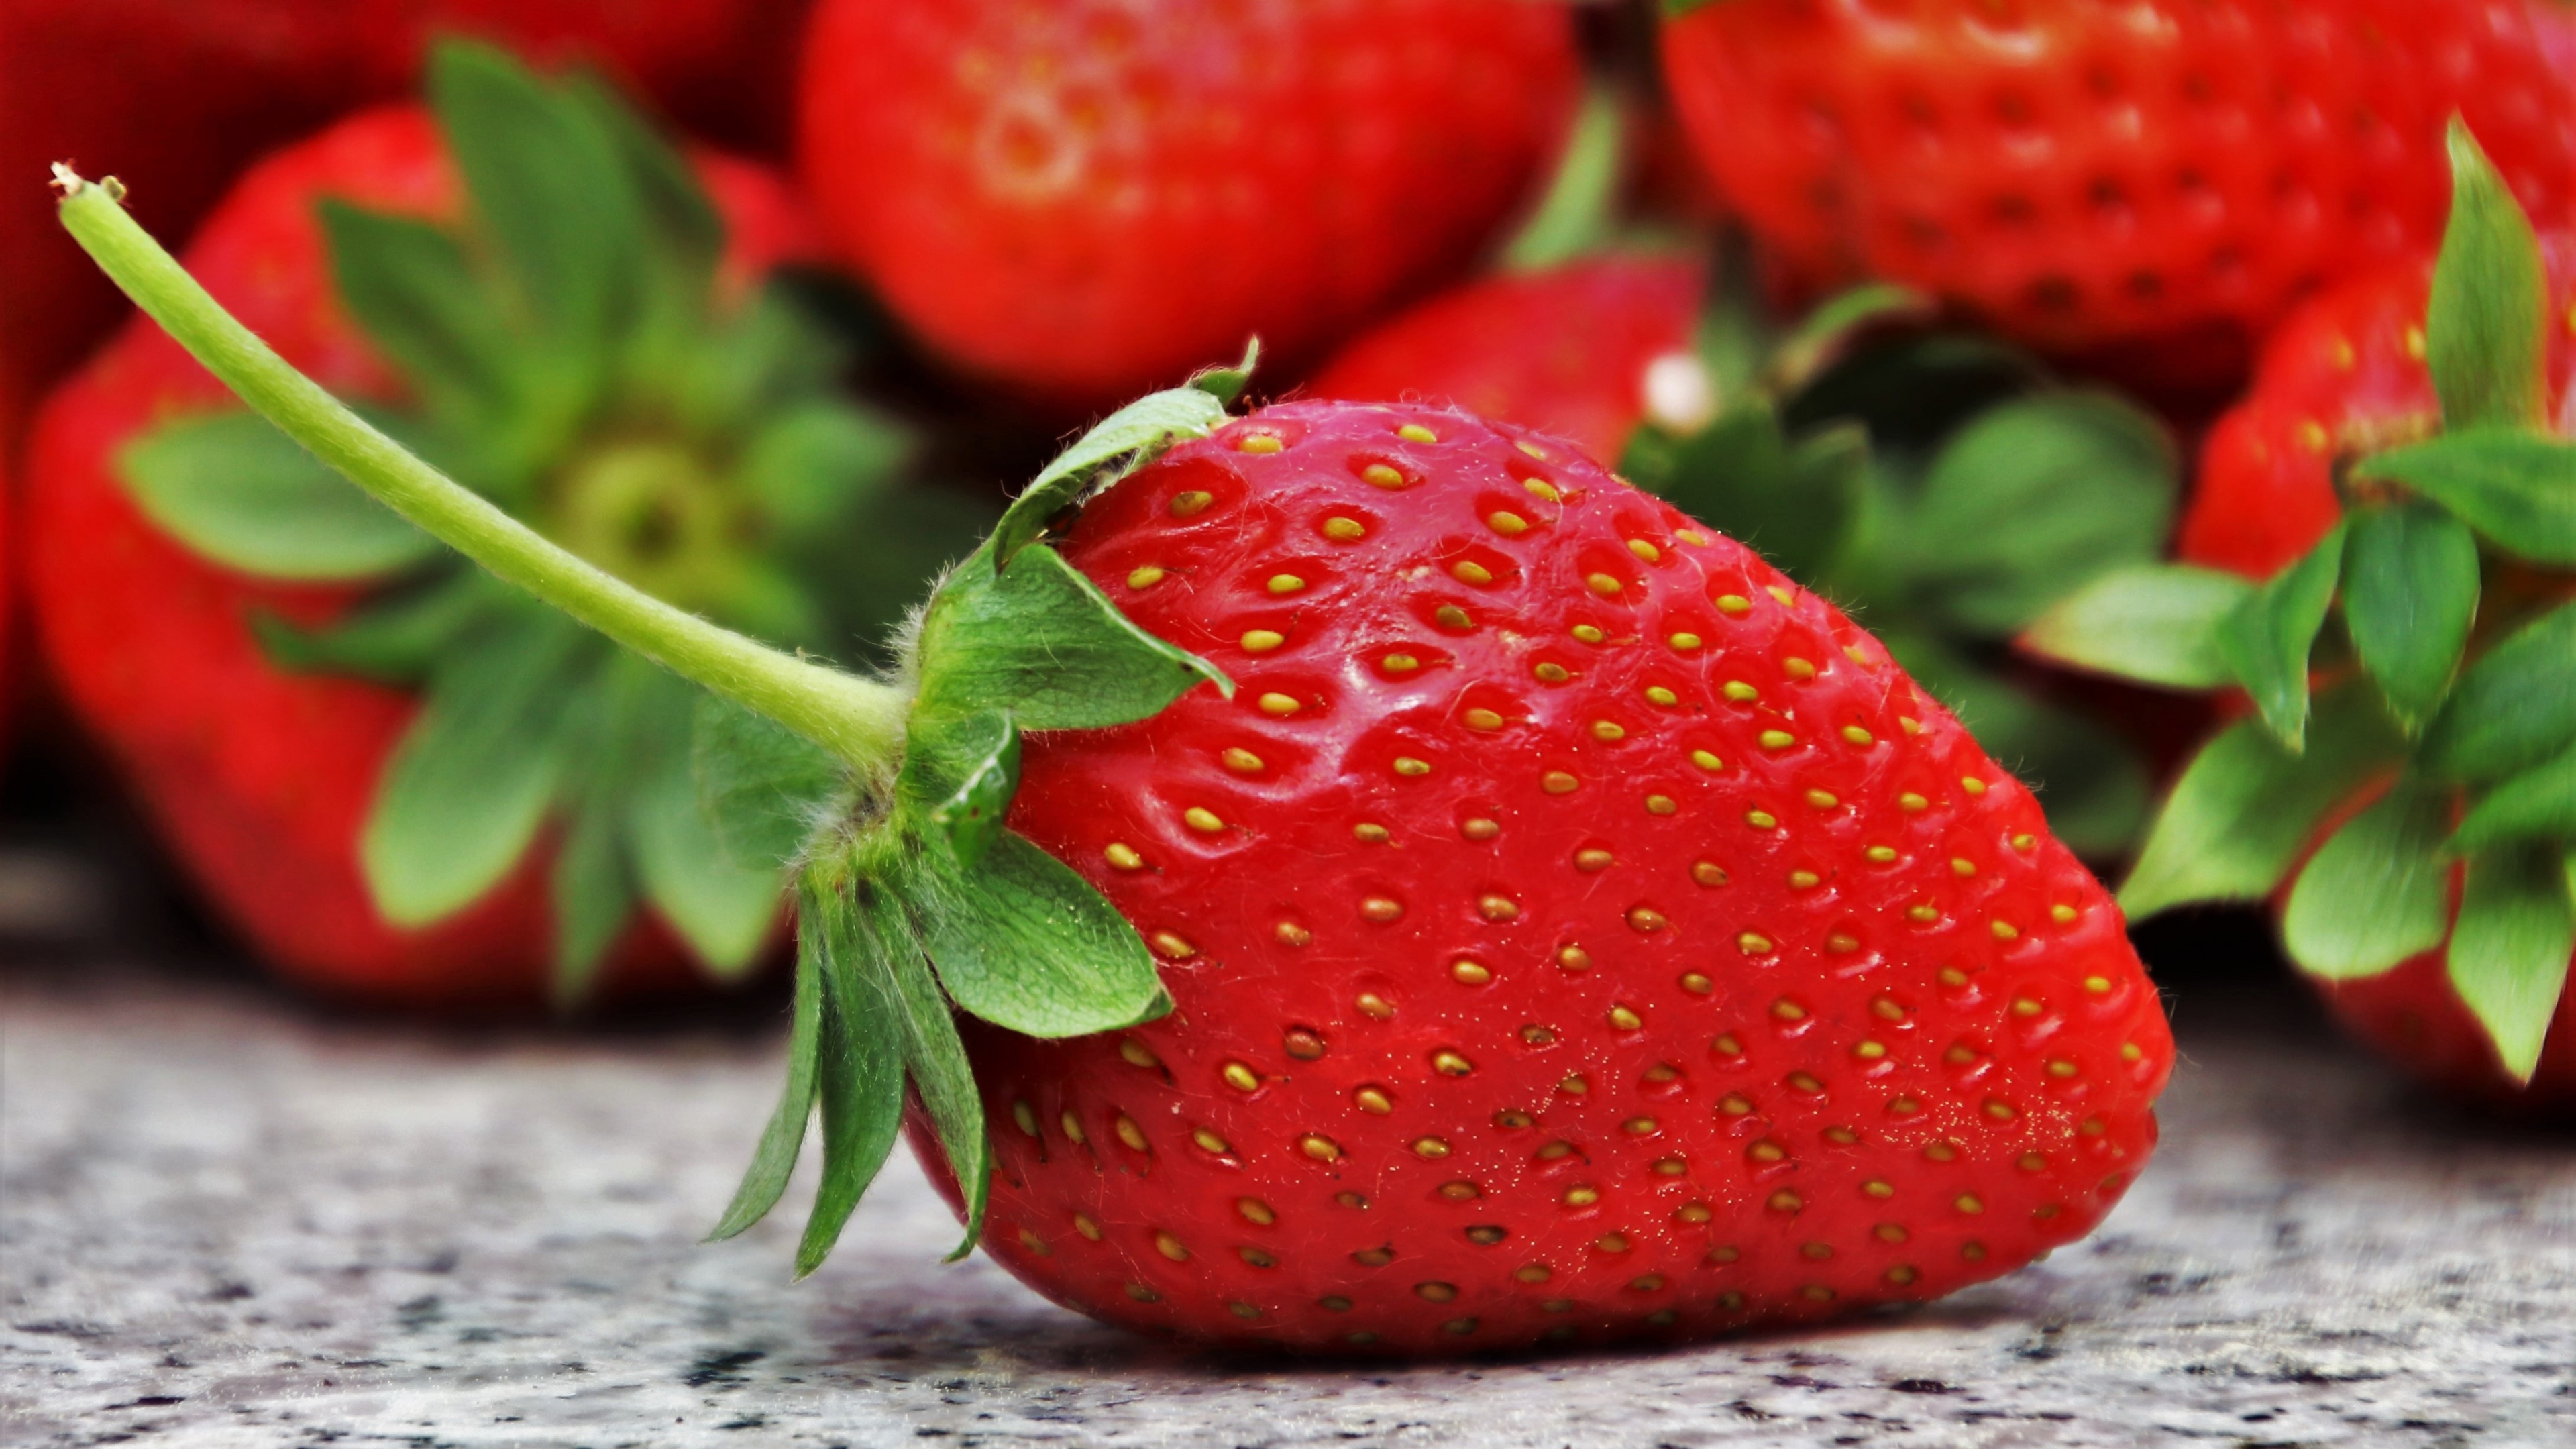 吃, 草莓, 天然的食物, 红色的, 食品 壁纸 3840x2160 允许